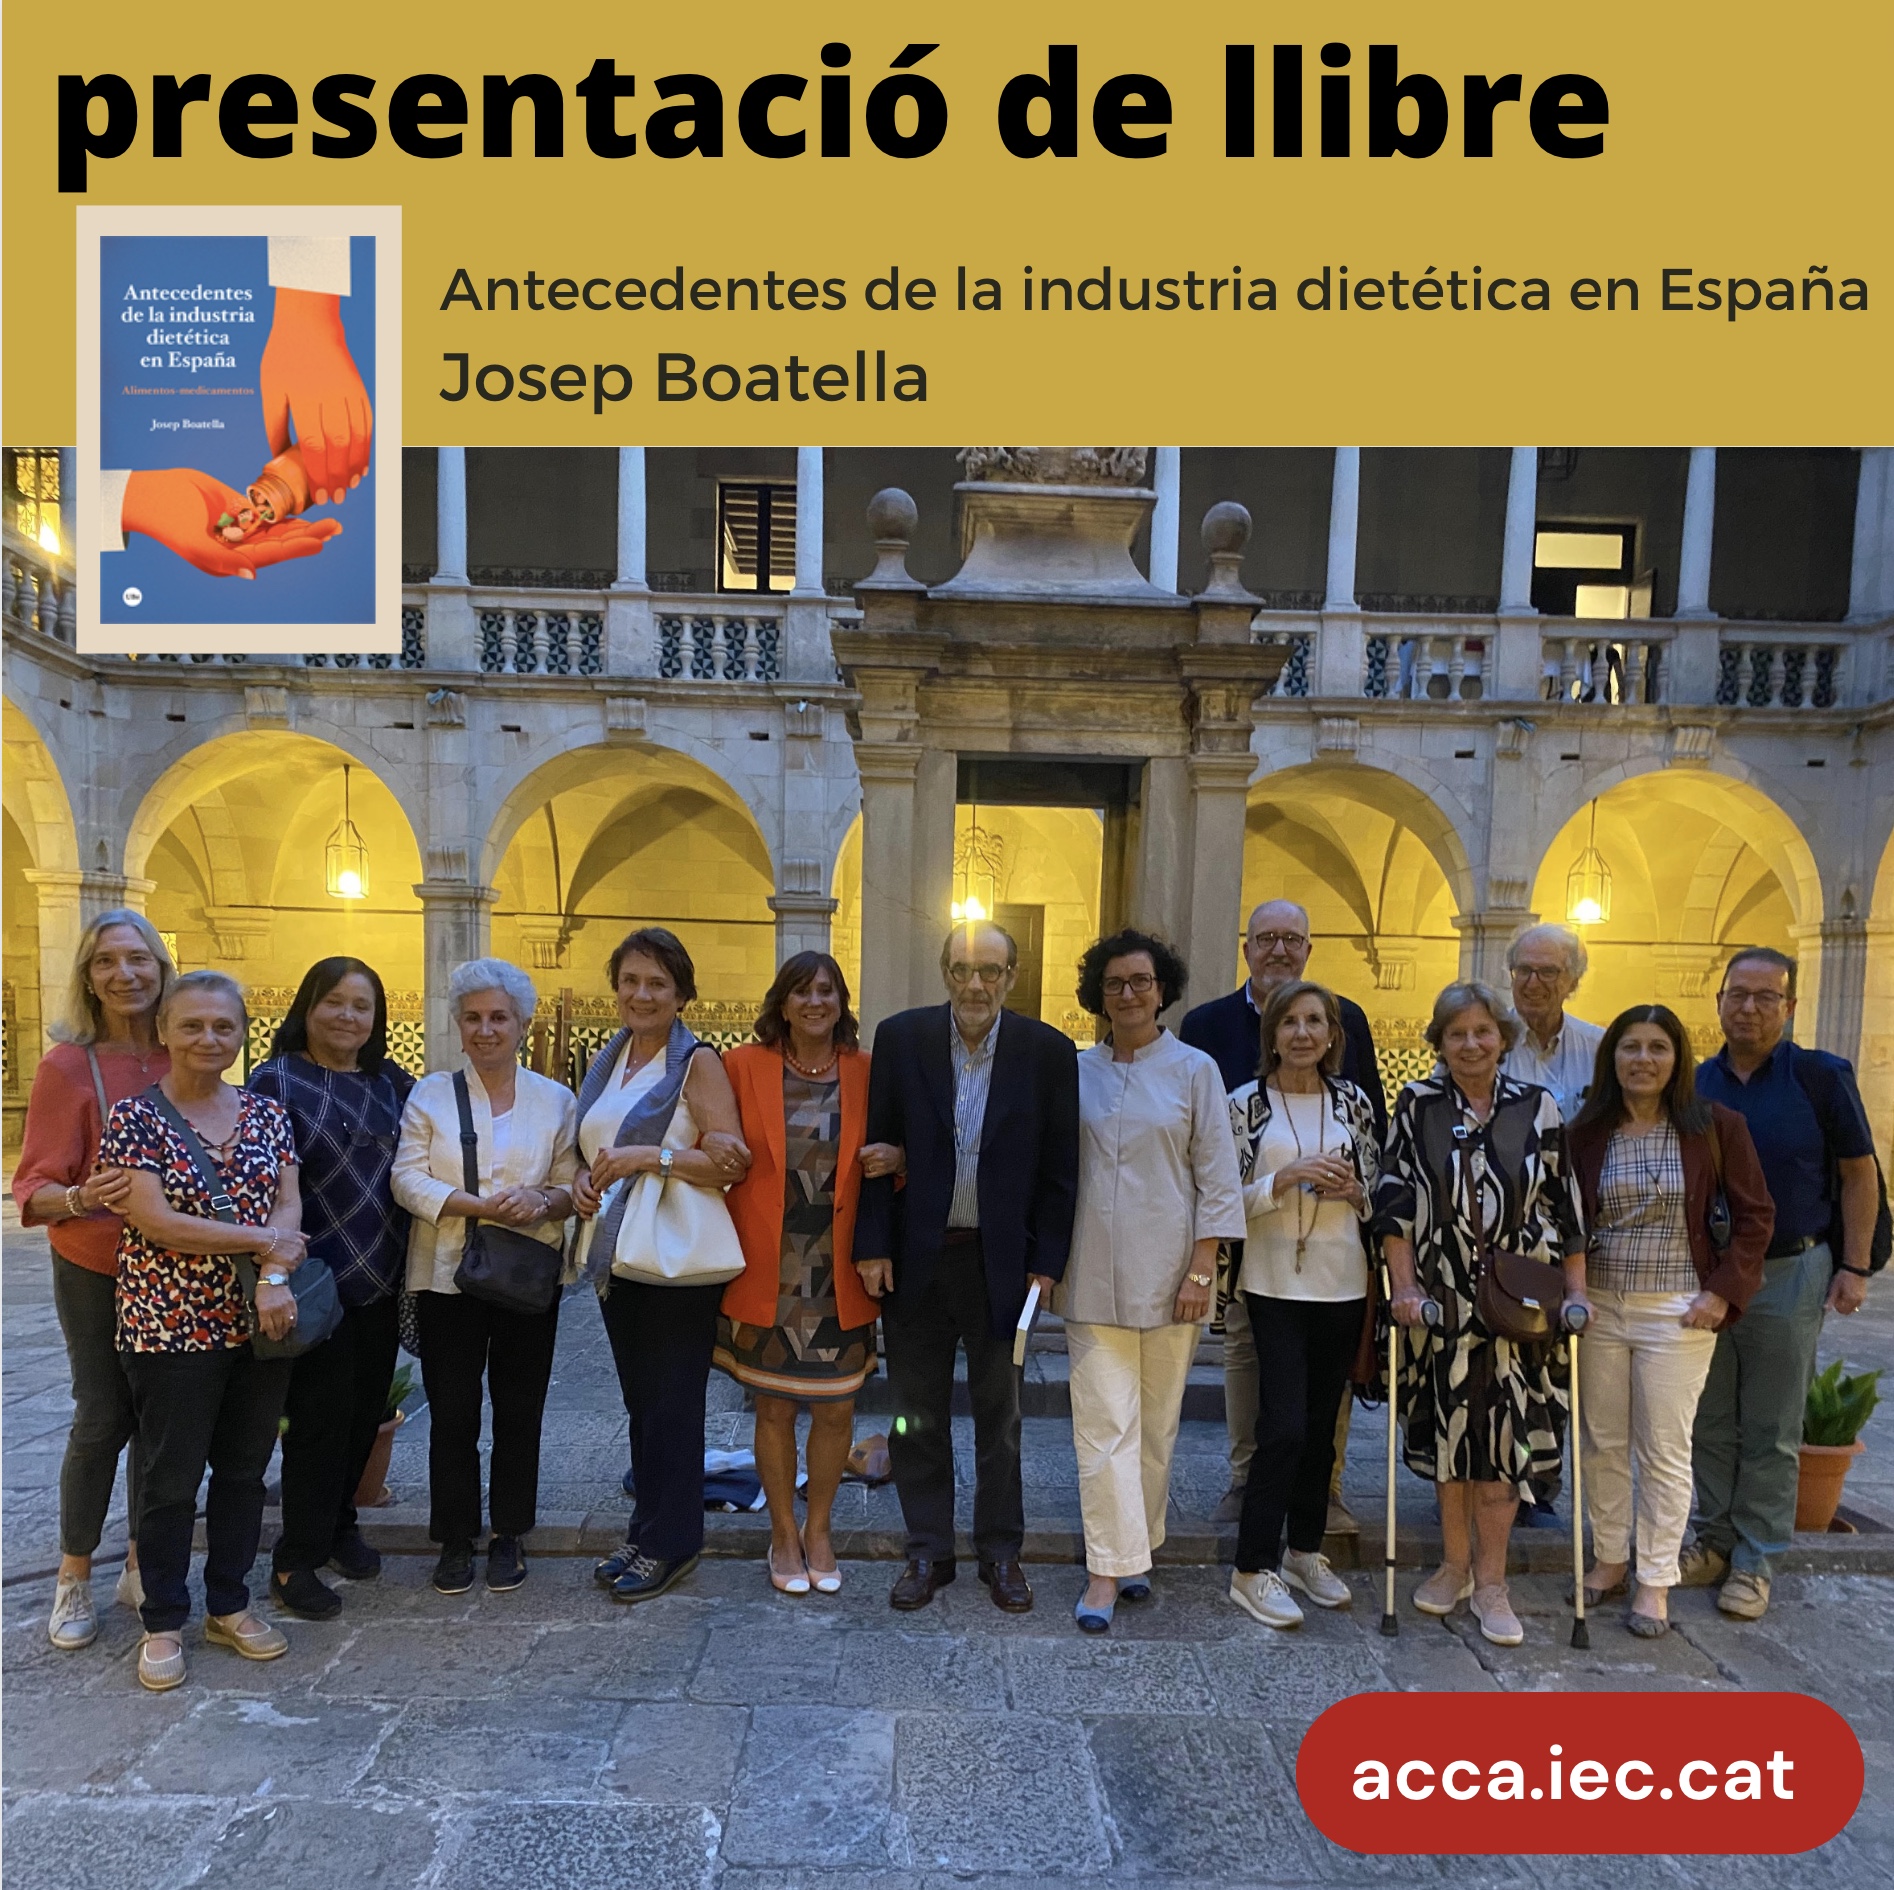 Presentació del llibre de Josep Boatella “Antecedentes de la indústria dietética en España. Alimentos-medicamentos”